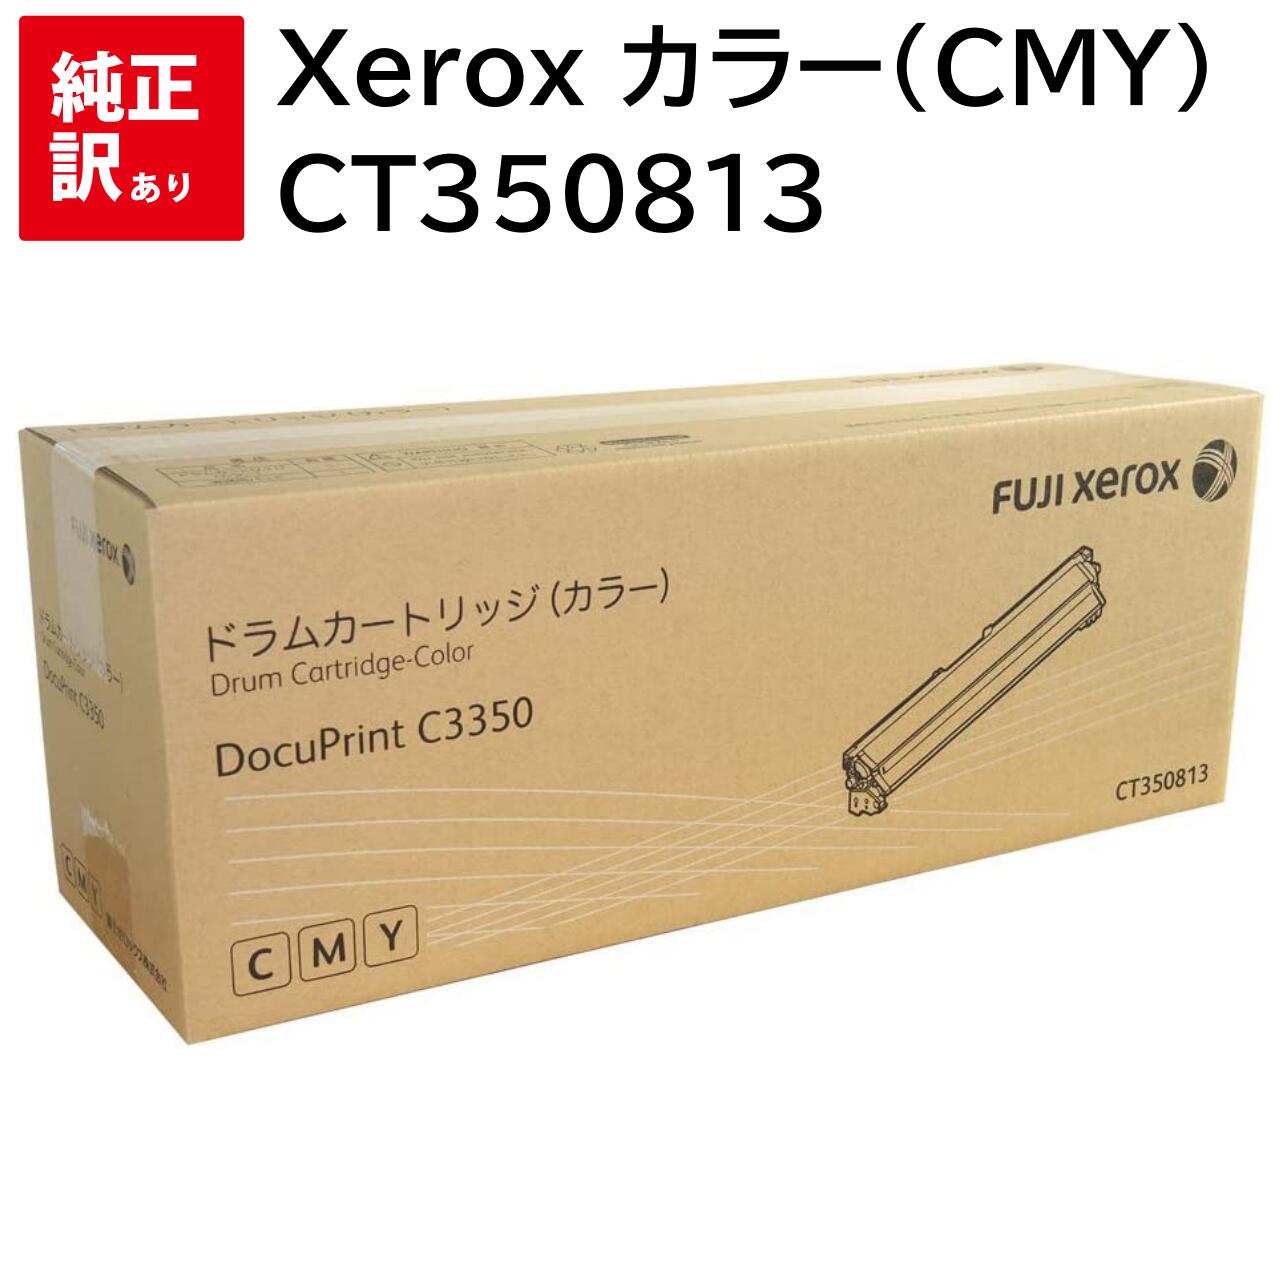 訳あり 新品 Xerox CT350813 カラー (CMY) ゼロックス トナー カートリッジ パソコン 周辺機器 PCサプライ 消耗品 プリンター メーカー 純正 送料無料 4982012813181 DocuPrint C3550d C3350s C3350 C3450d C3450dII C2550d C2450II C2450